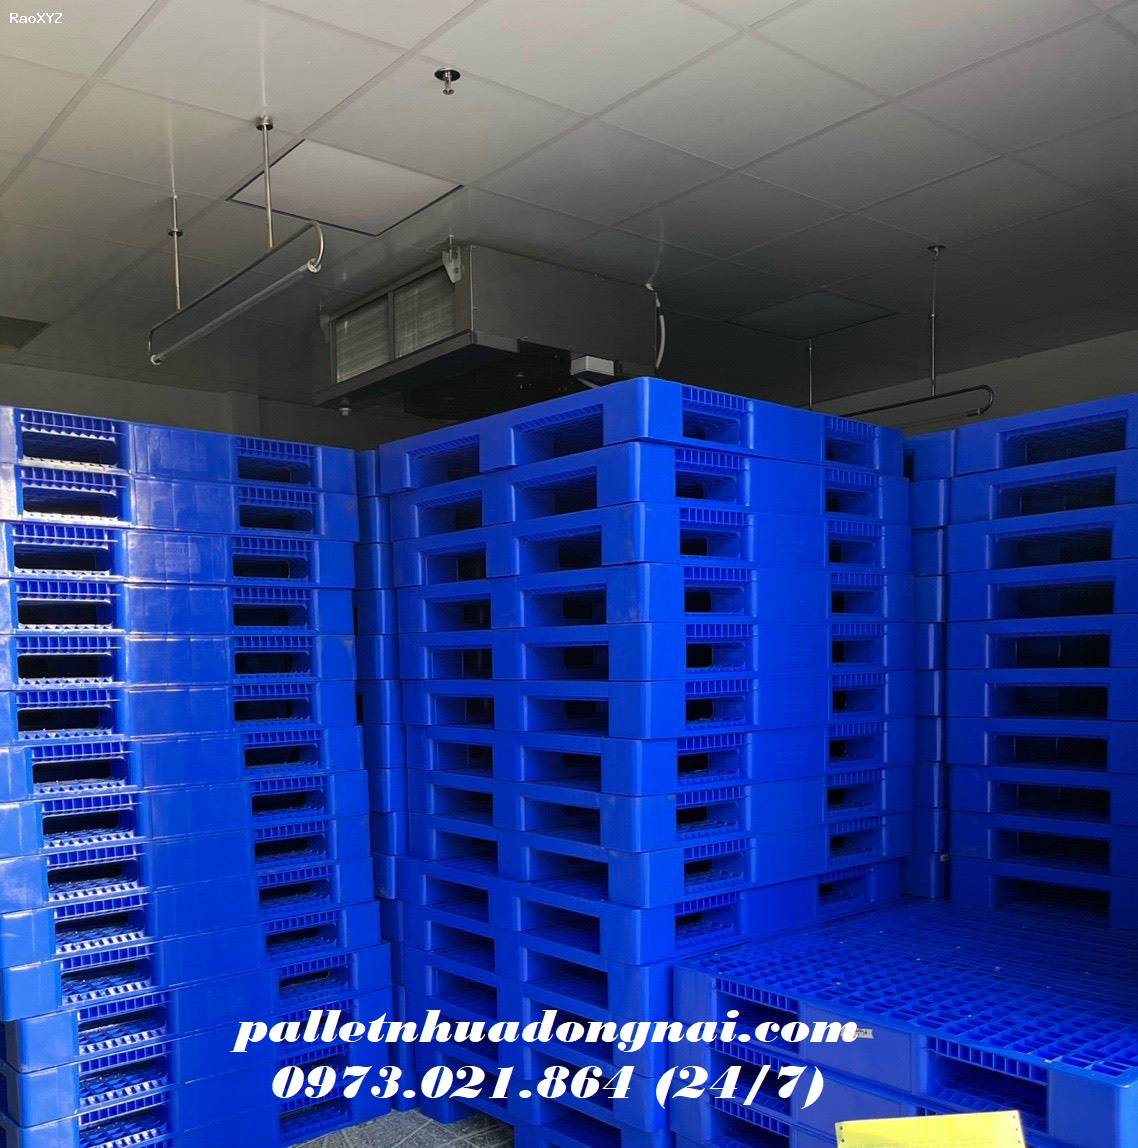 Pallet nhựa cũ tại Tiền Giang, liên hệ 0973021864 (24/7)